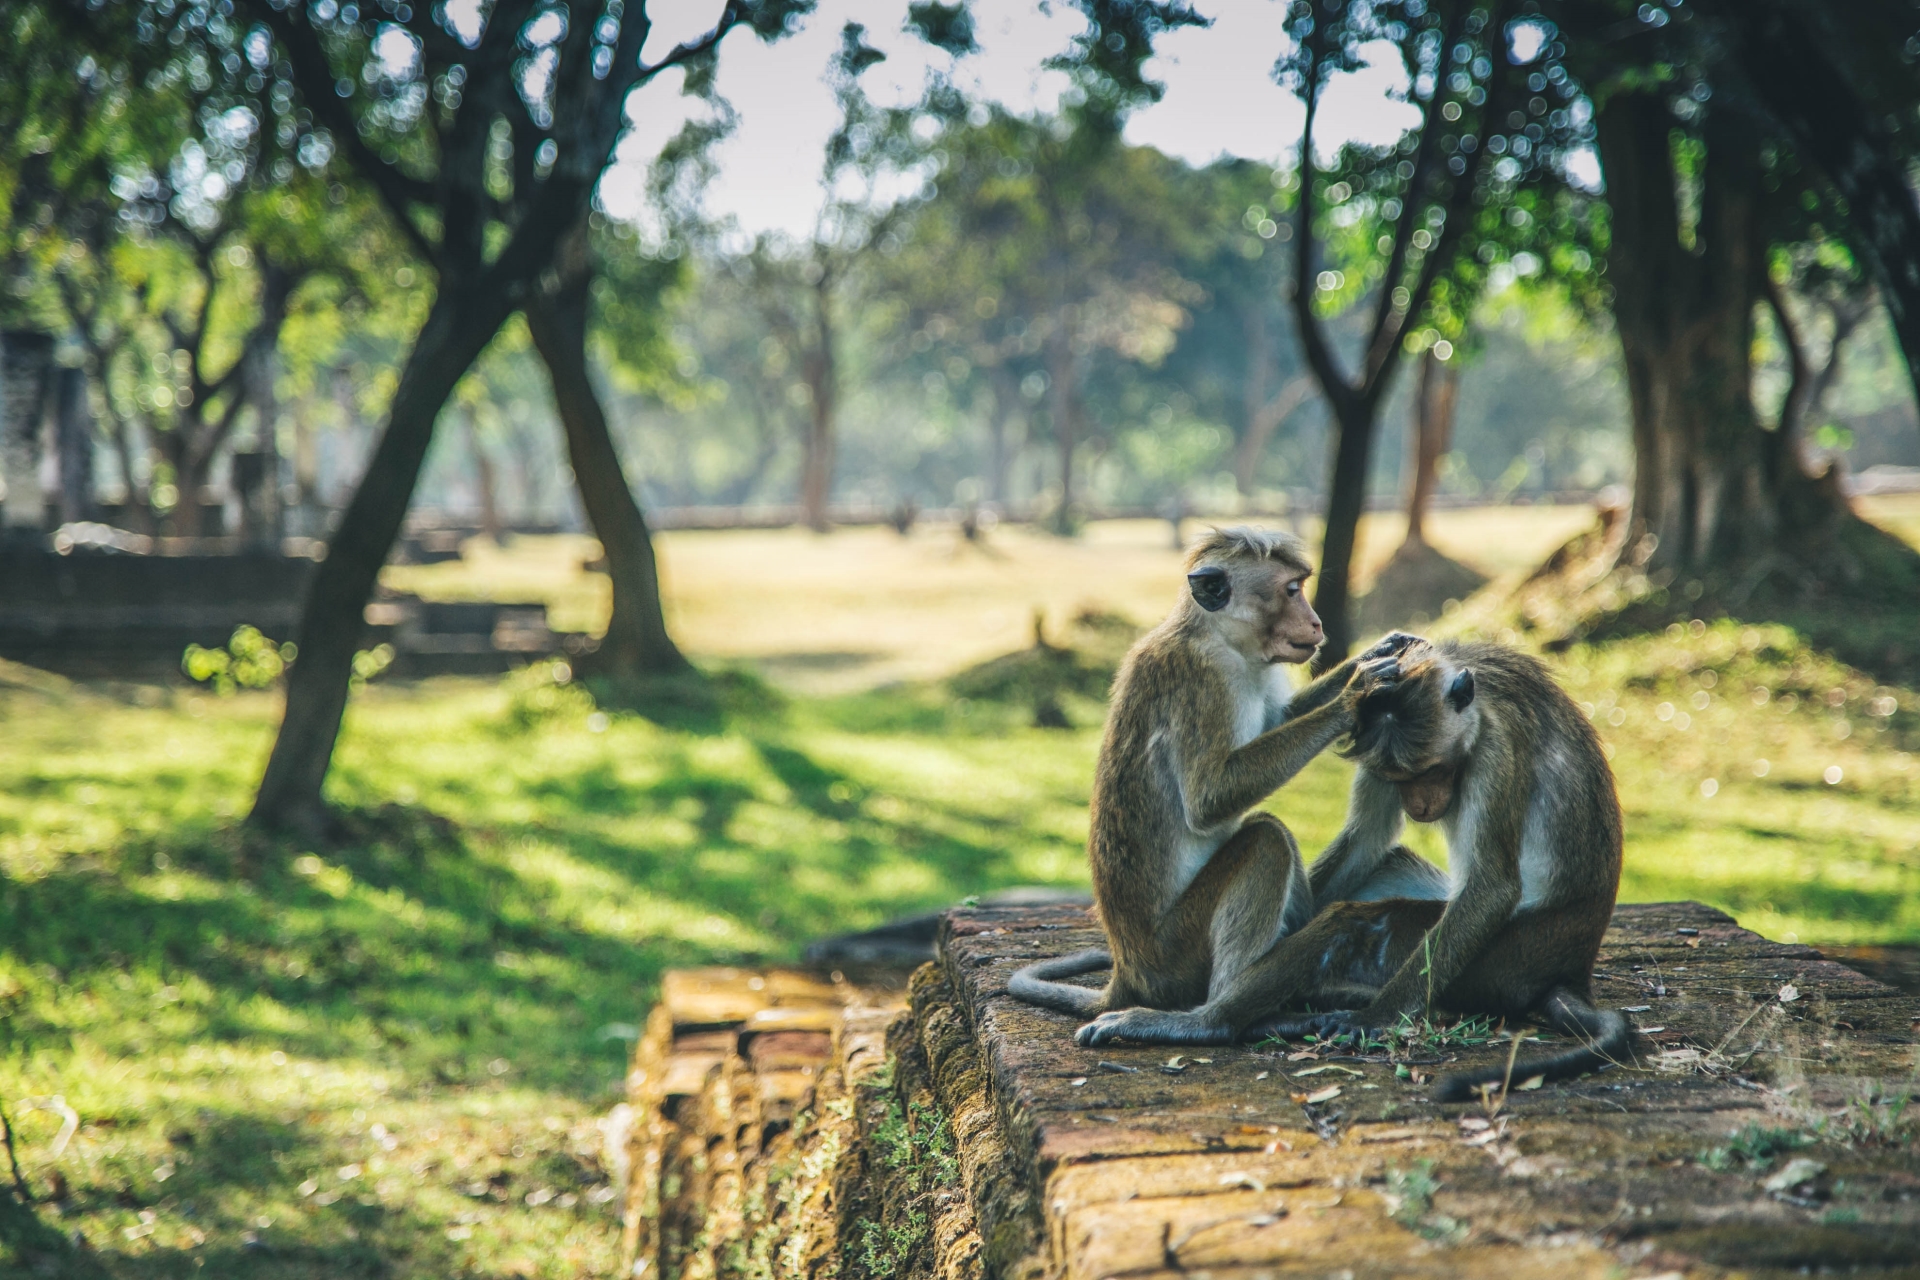 Monkeys - Sri Lanka in Style